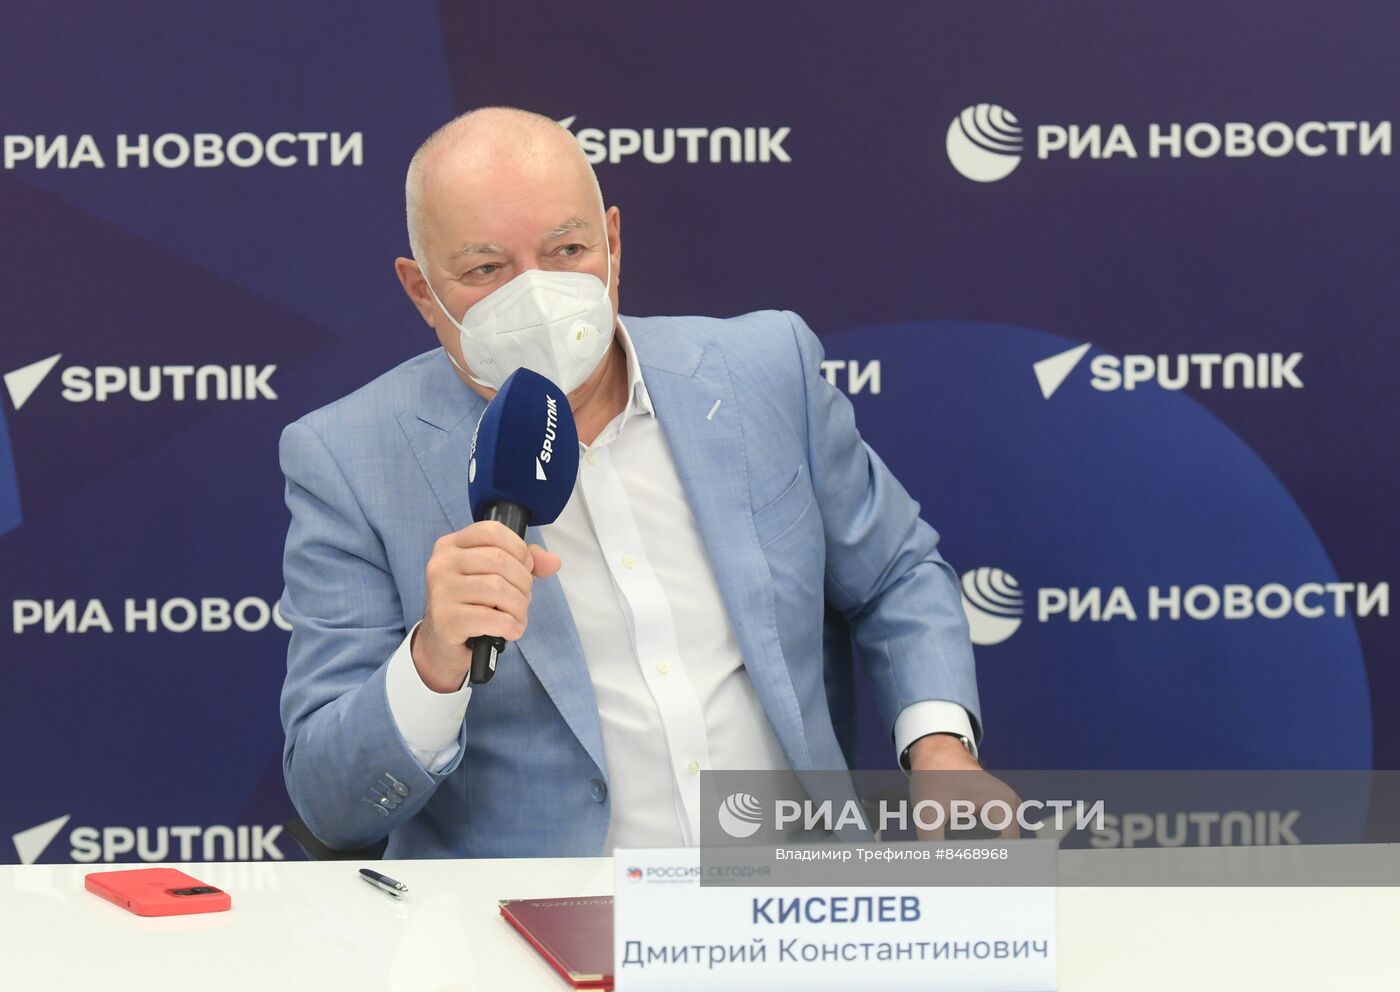 Подписание соглашения между медиагруппой "Россия сегодня" и РАН